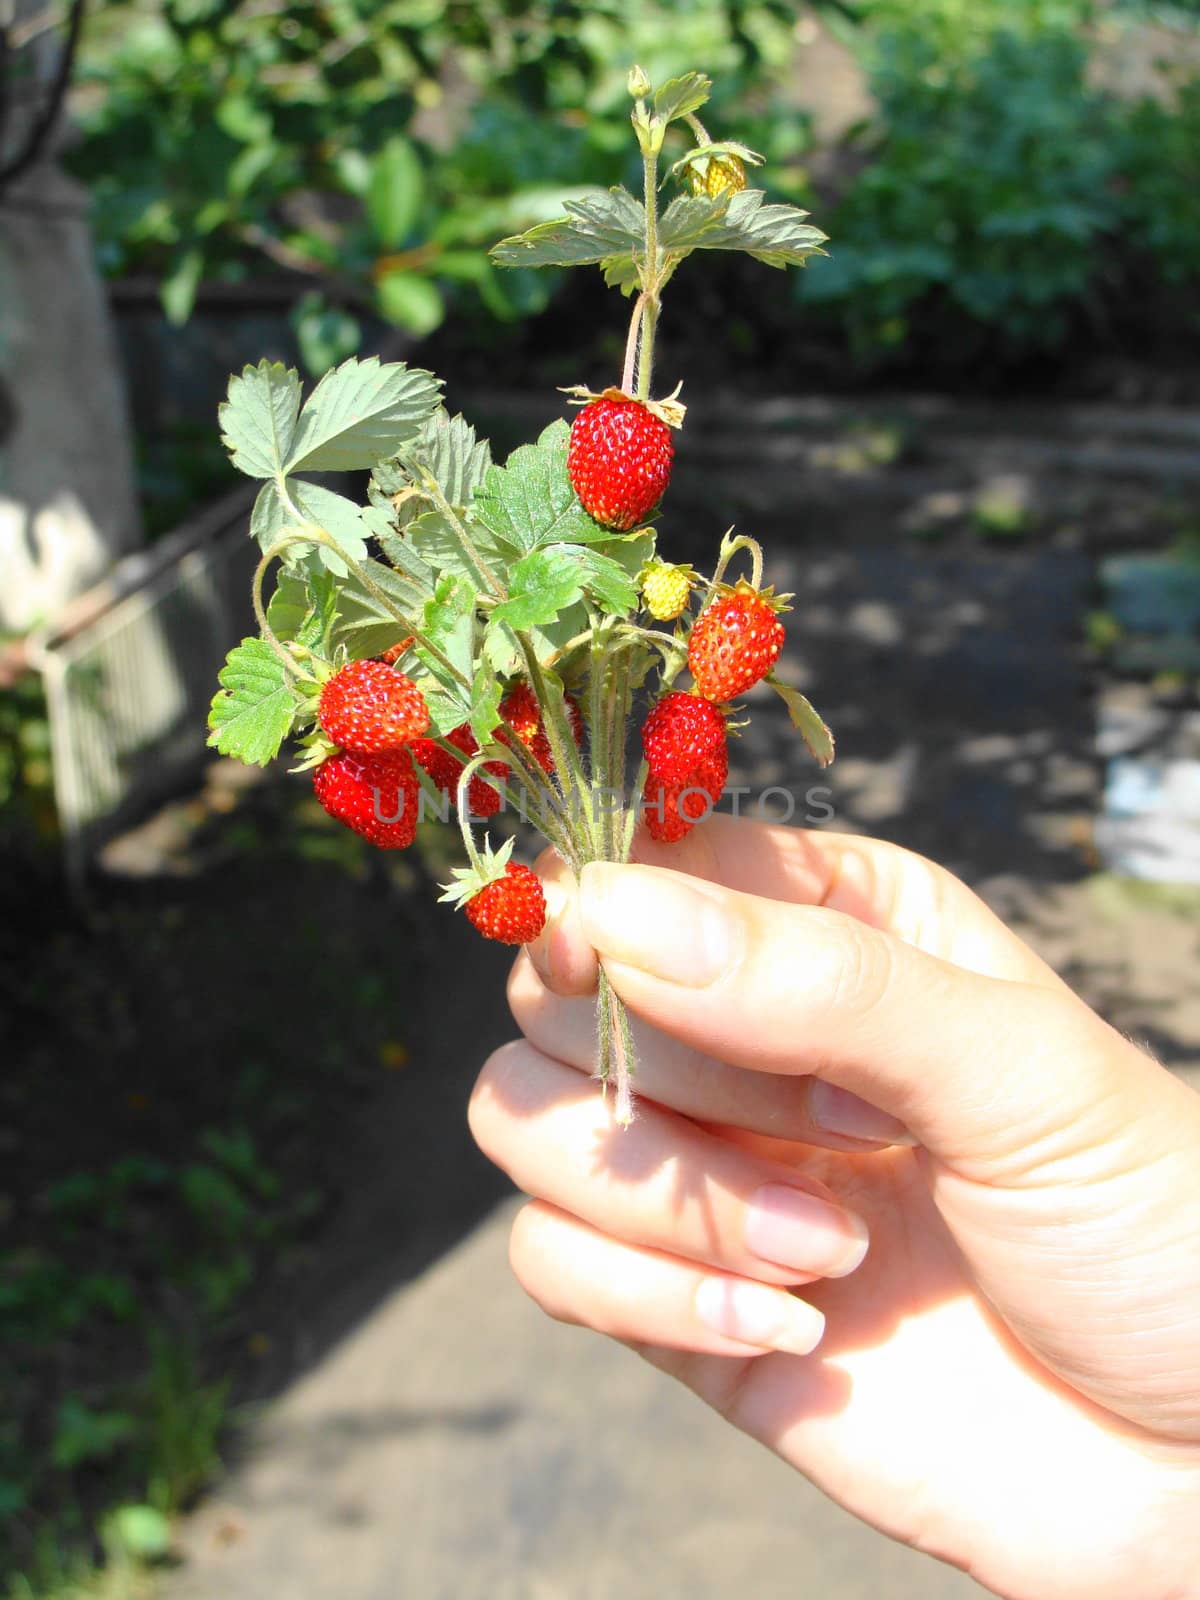 Wild strawberry in a female hand by koletvinov